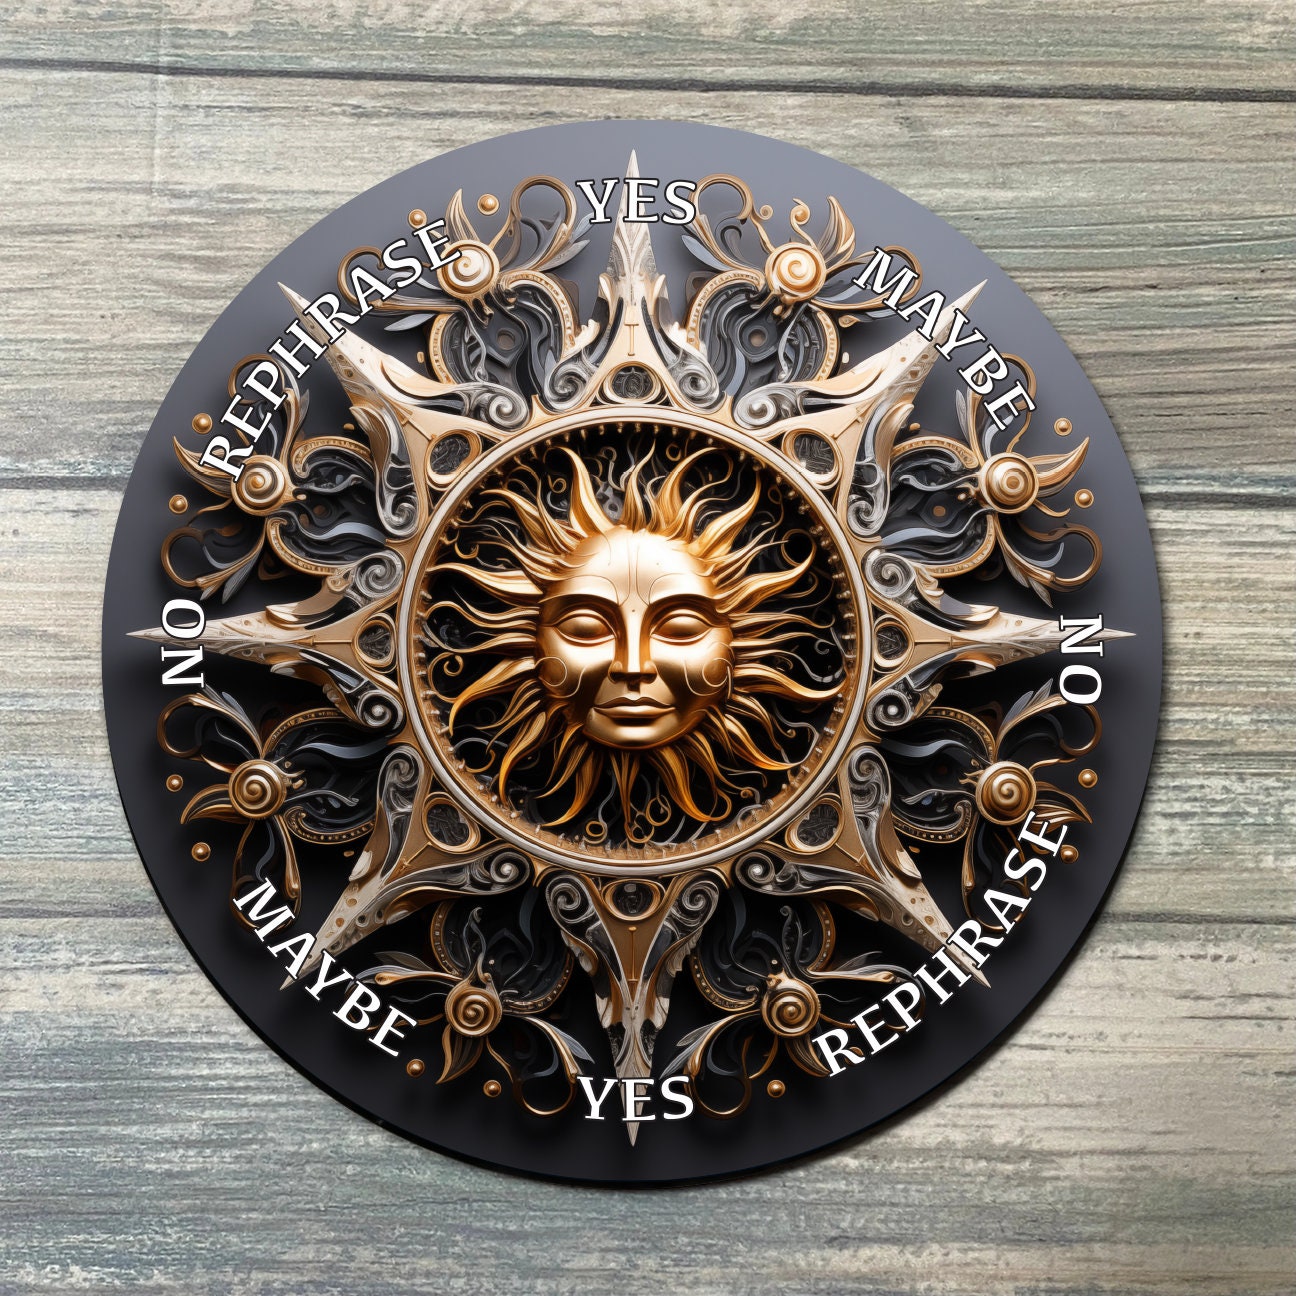 Sun Pendulum Board - Sun Divination Board - Full Color - Altar Decoration